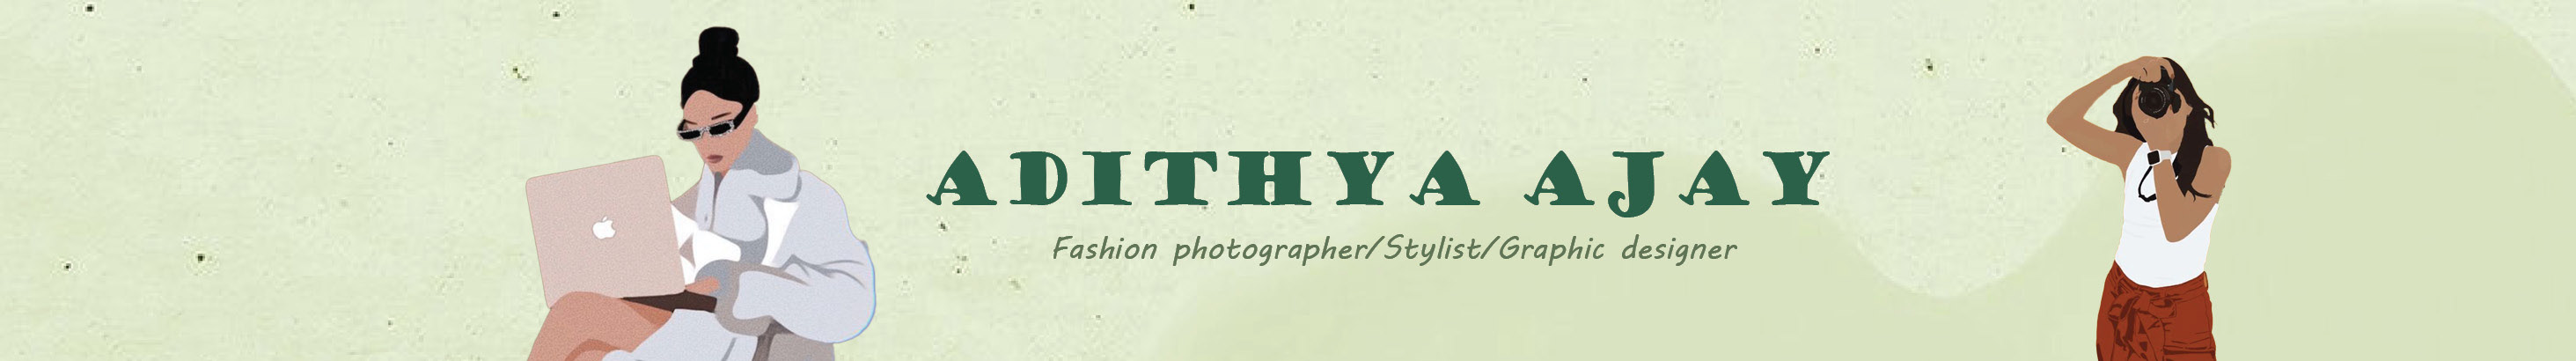 Баннер профиля Adithya Ajay